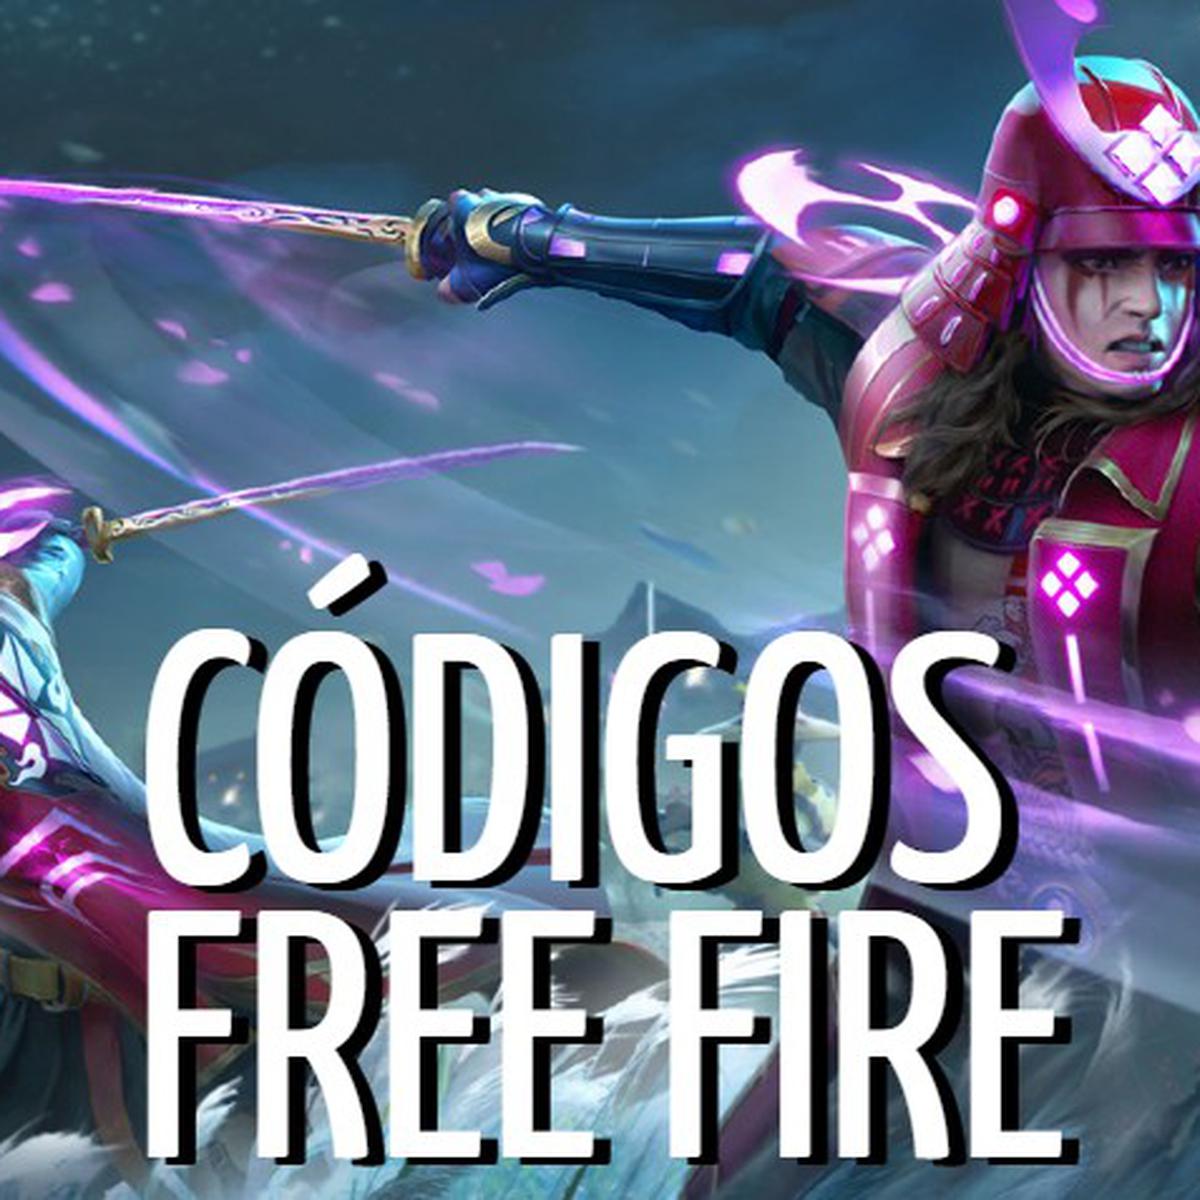 Free Fire: códigos de canje para hoy, 8 de noviembre de 2021, México, España, Loot gratis, Redeem Codes, Diarios, Hoy, DEPOR-PLAY